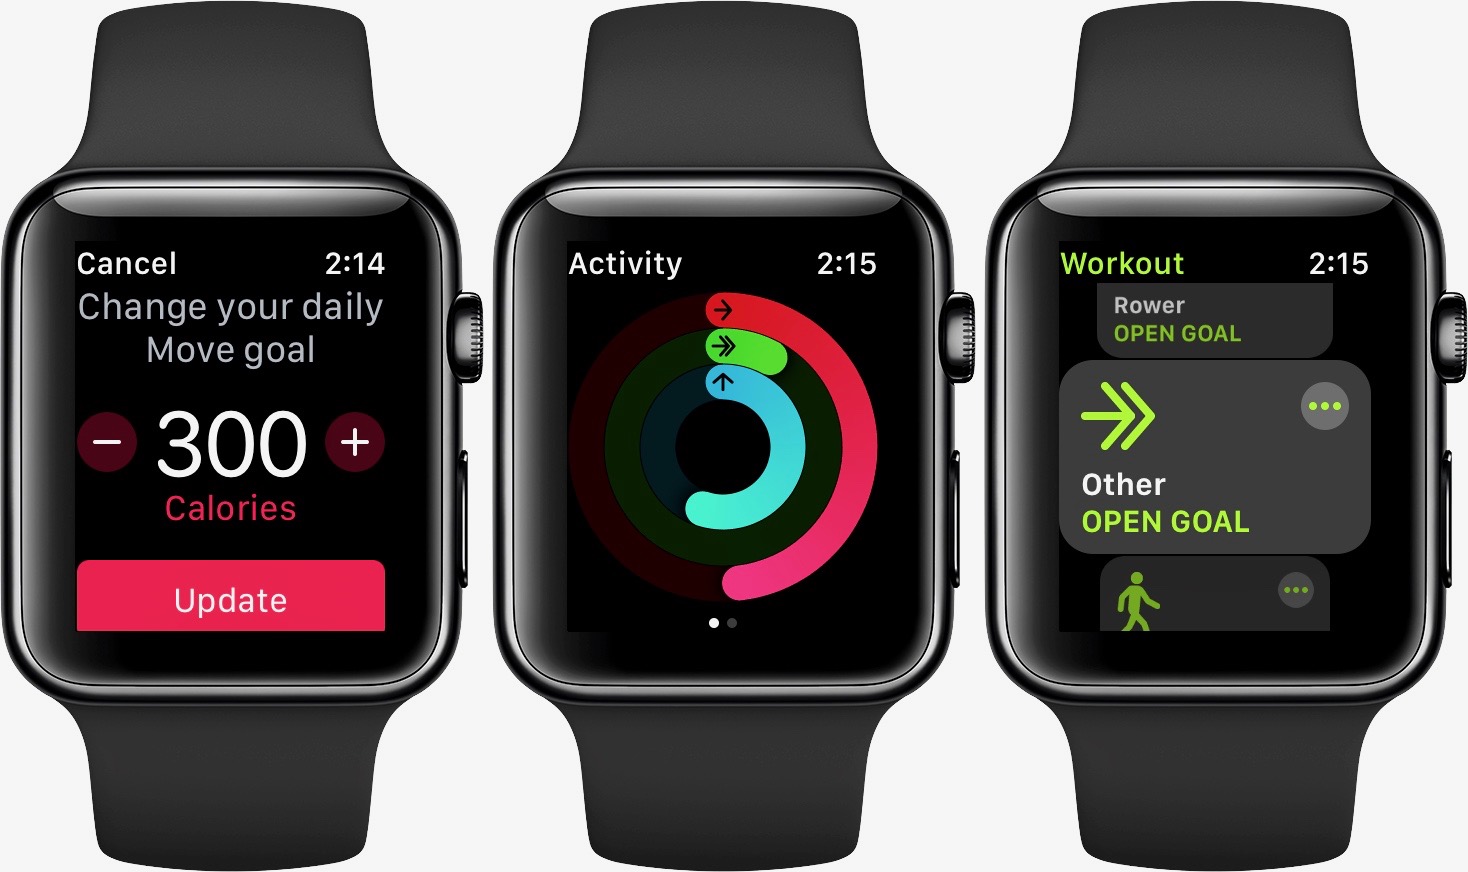 Change Apple Watch exercise goal walkthrough 2